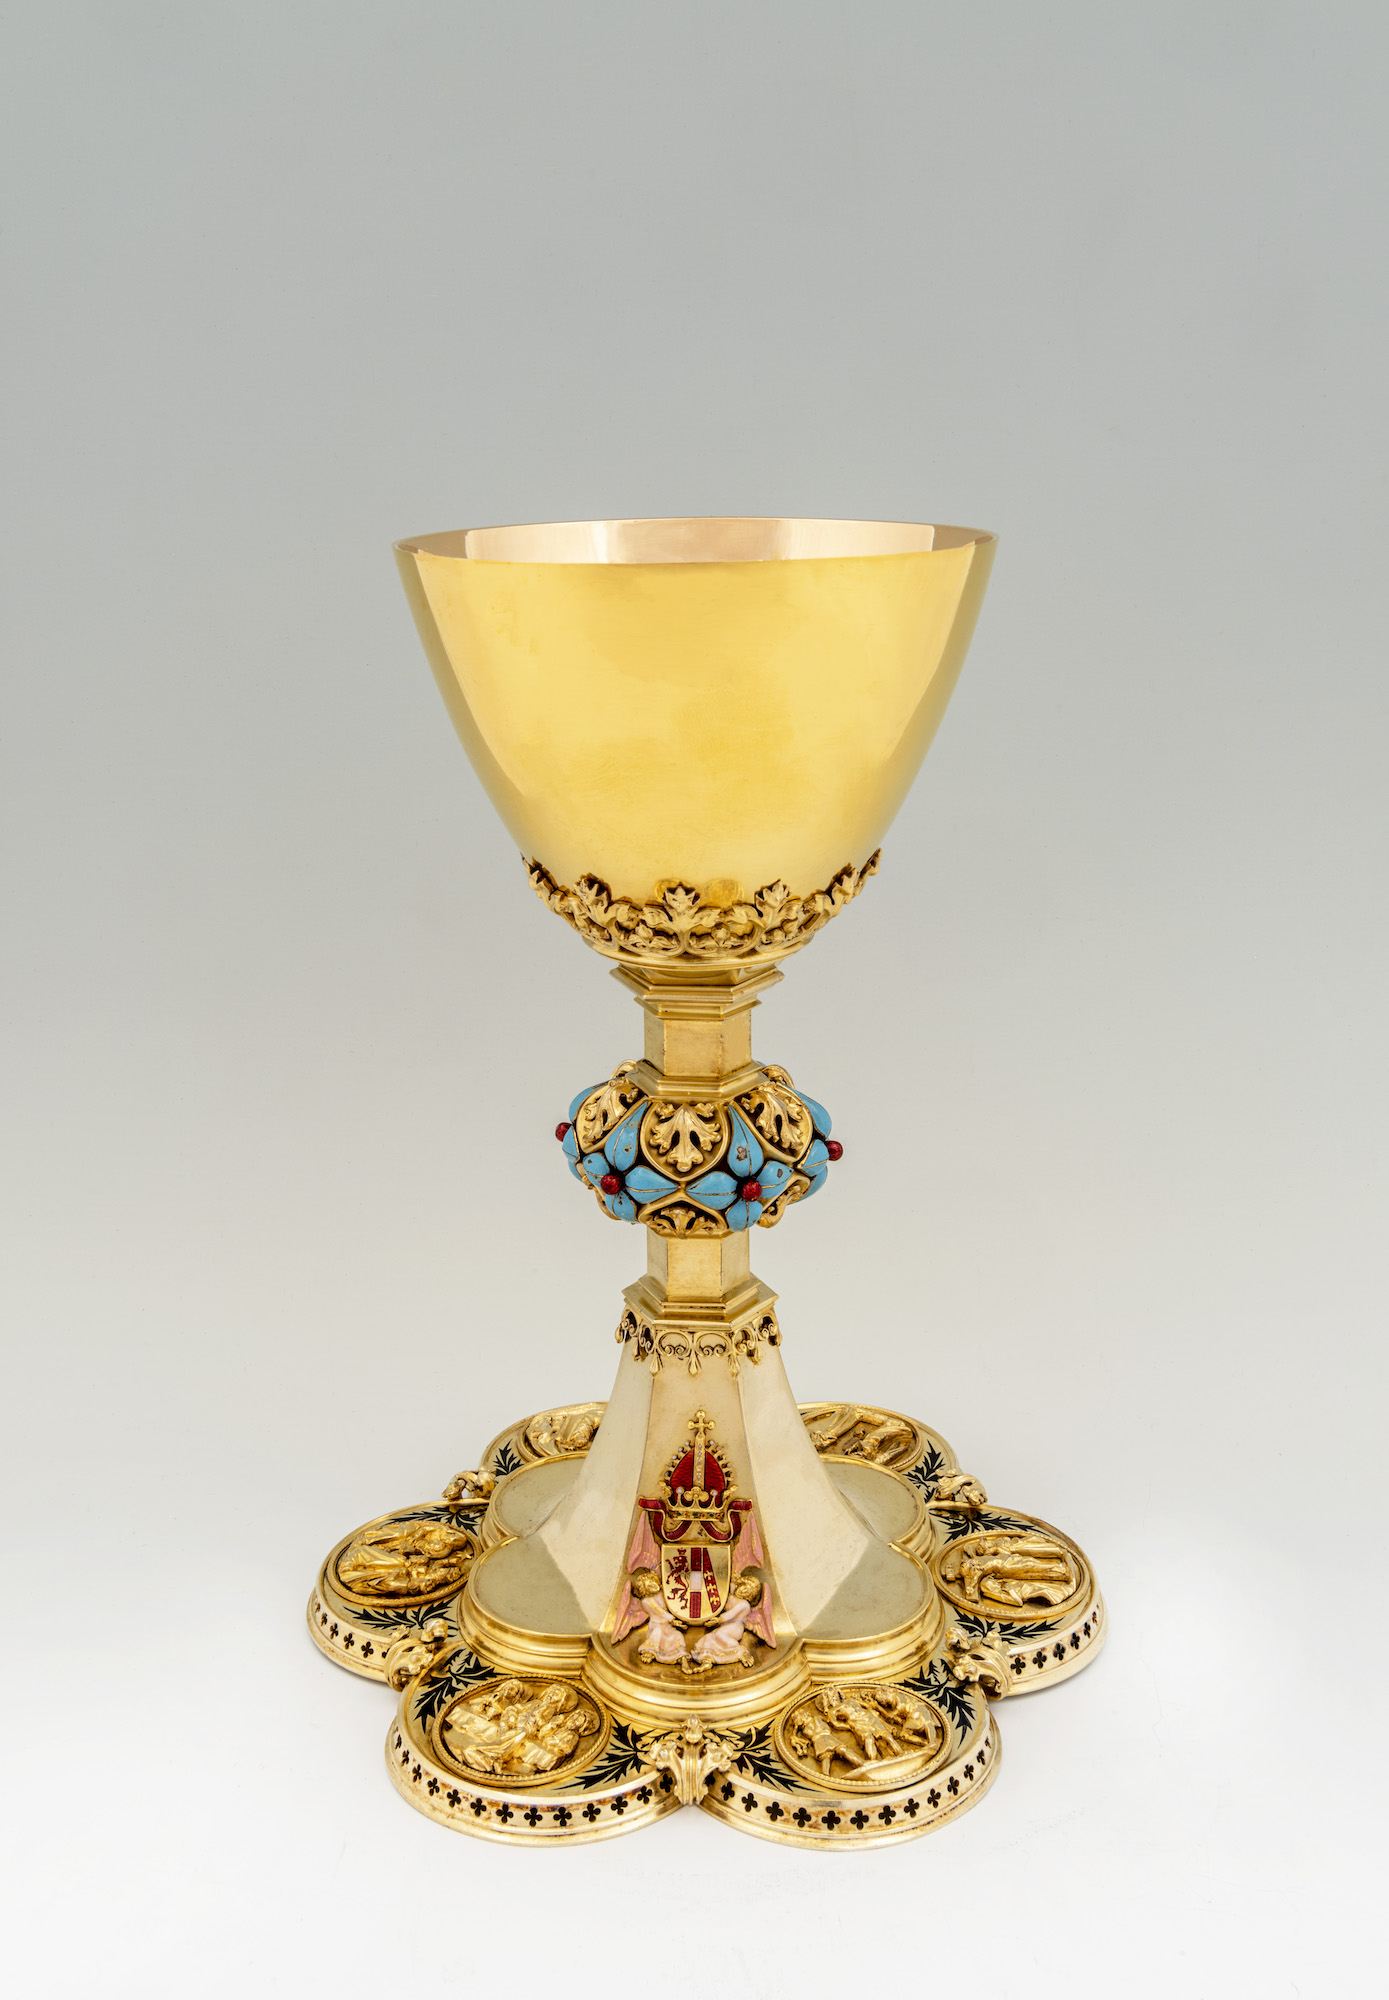 Kaiser Franz-Josef I. stiftete diesen goldenen Kelch im Gedenken an seine verstorbene Mutter. (c) Domschatzkammer Aachen/Anne Gold